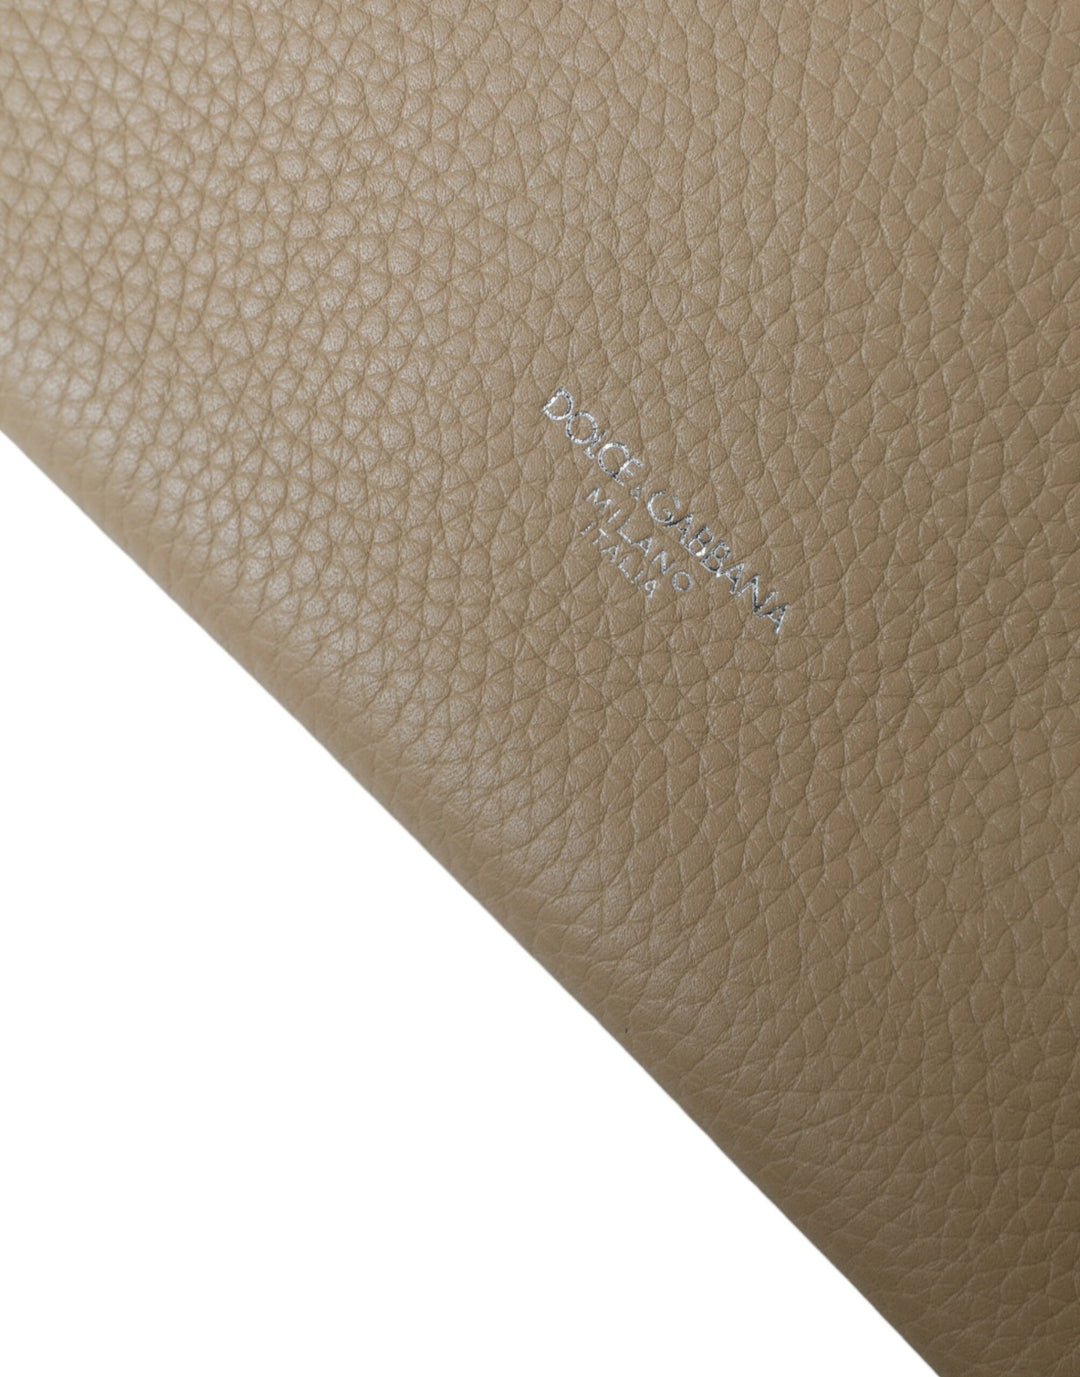 Dolce & Gabbana Elegance Redefined Beige Leather Belt Bag